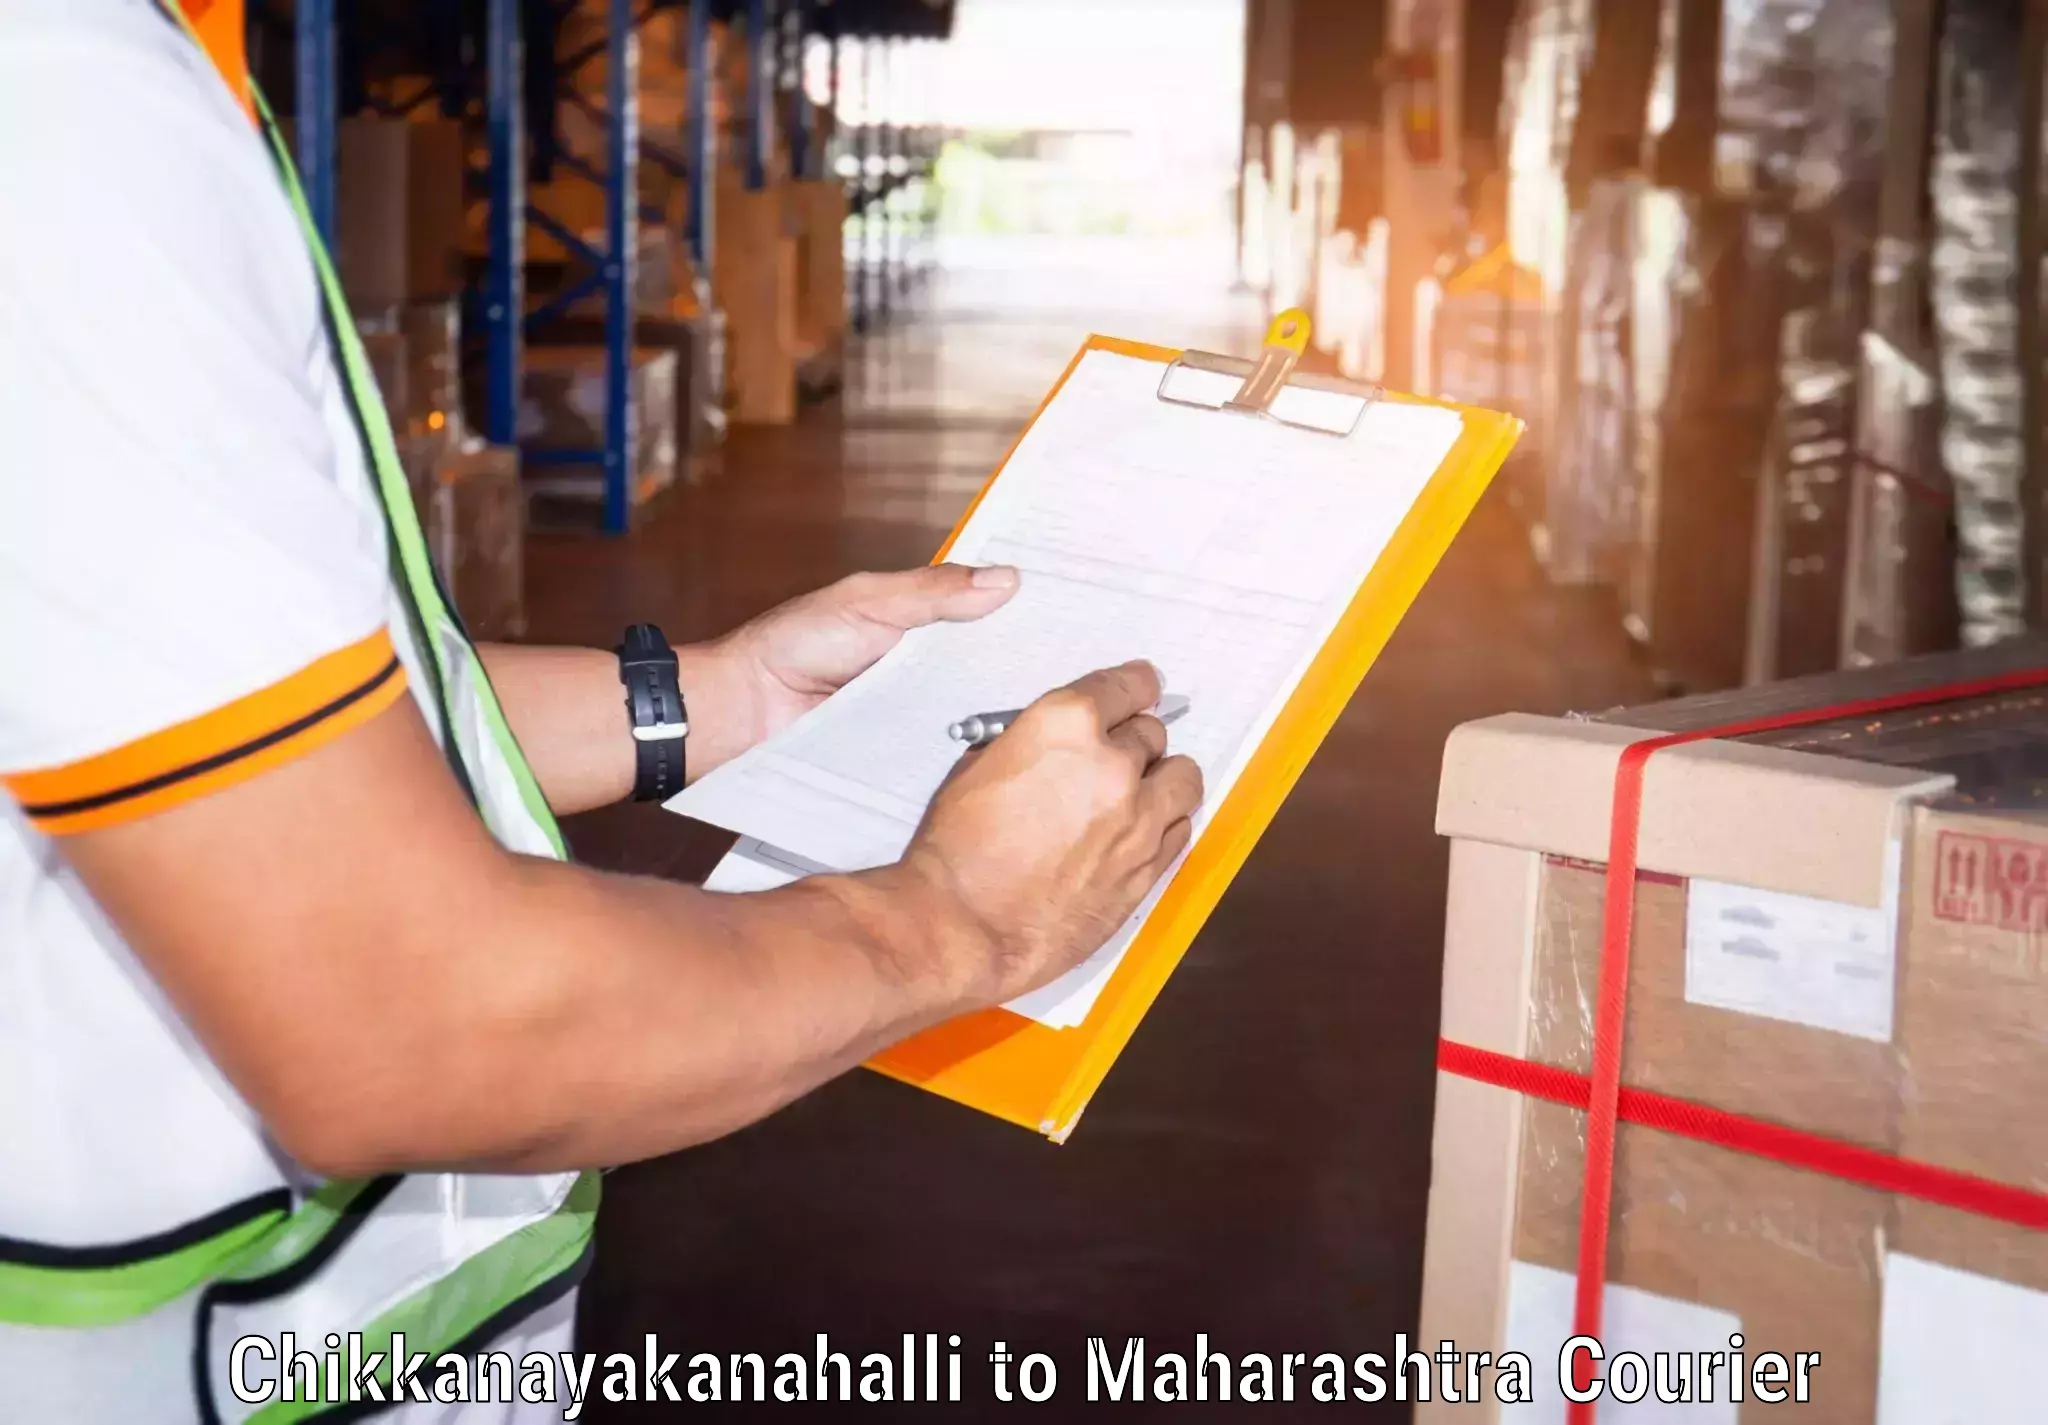 On-call courier service Chikkanayakanahalli to Ambajogai